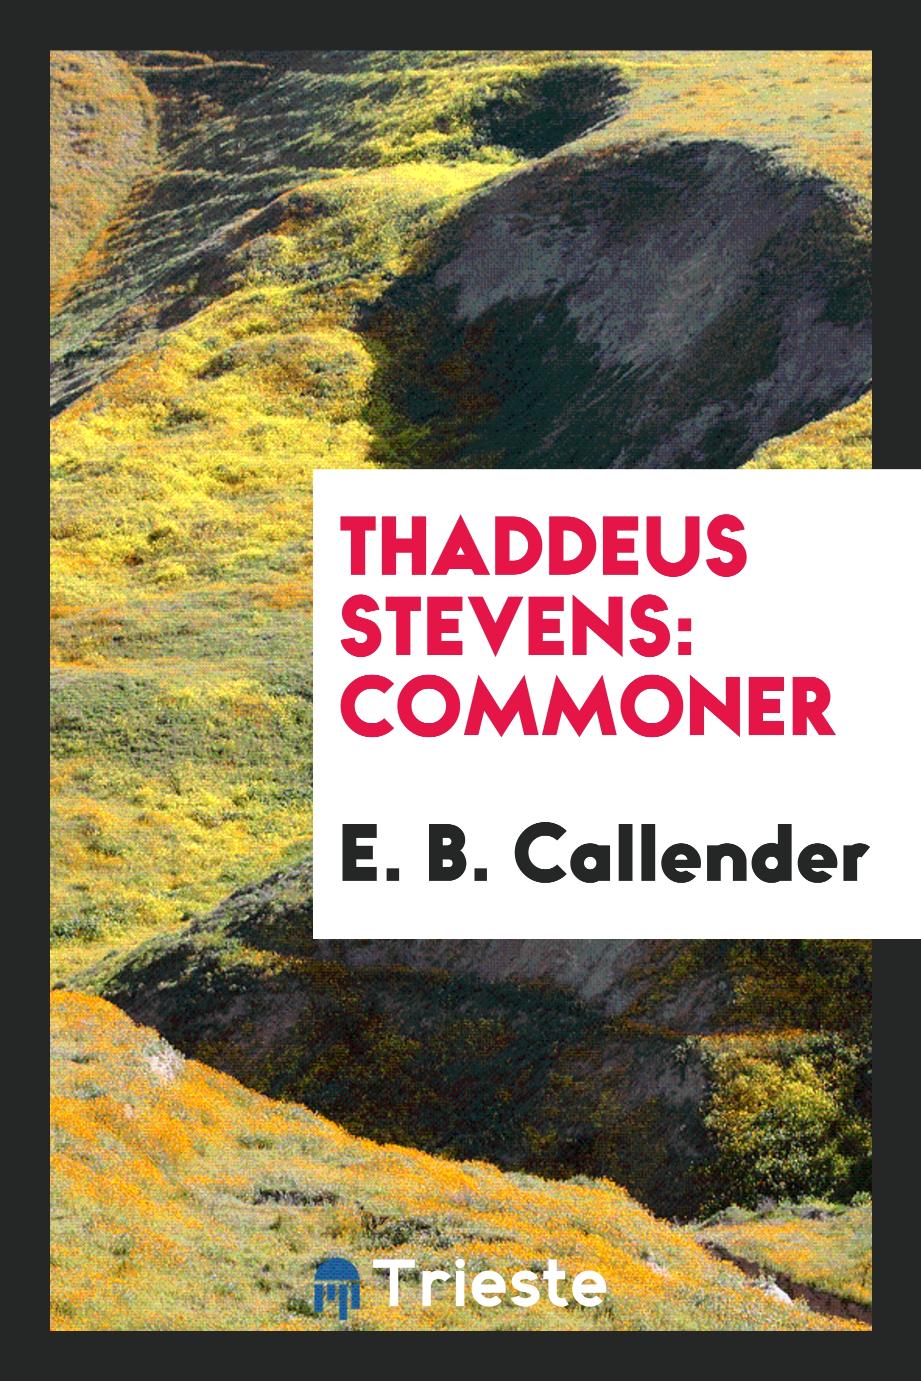 Thaddeus Stevens: commoner